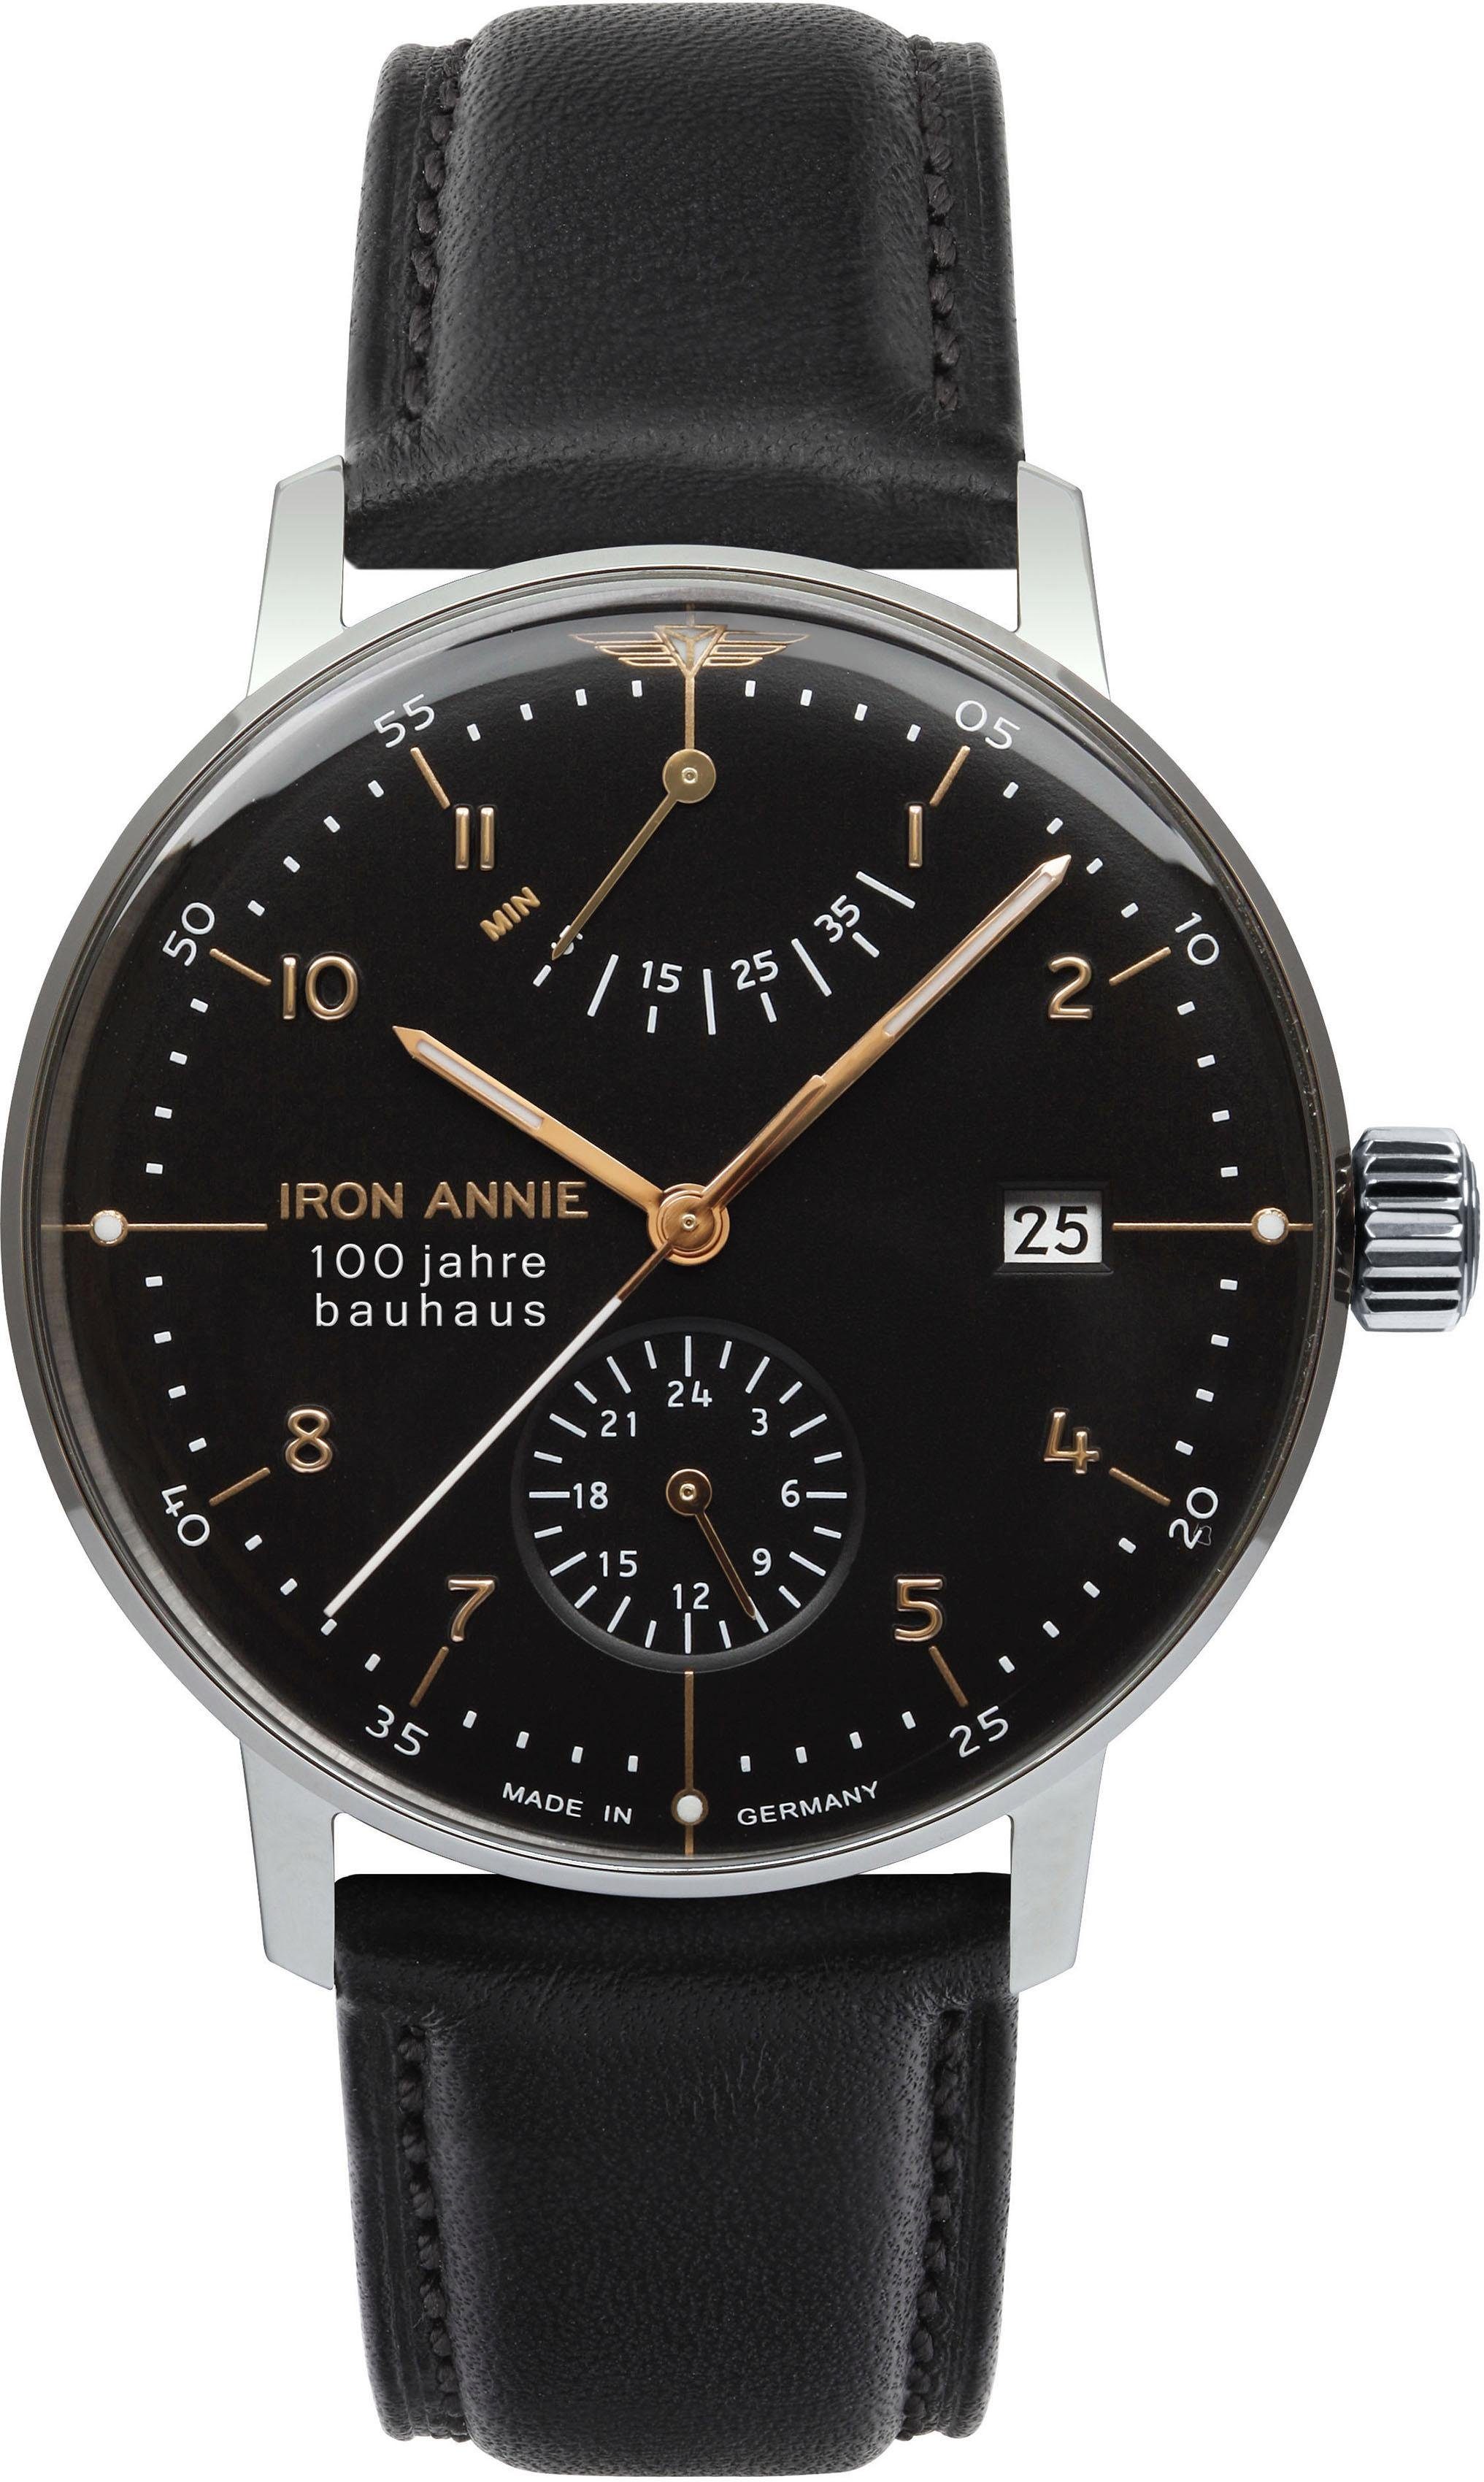 IRON ANNIE Automatikuhr Bauhaus, 5066-2, Armbanduhr, Herrenuhr, Datum, Made in Germany